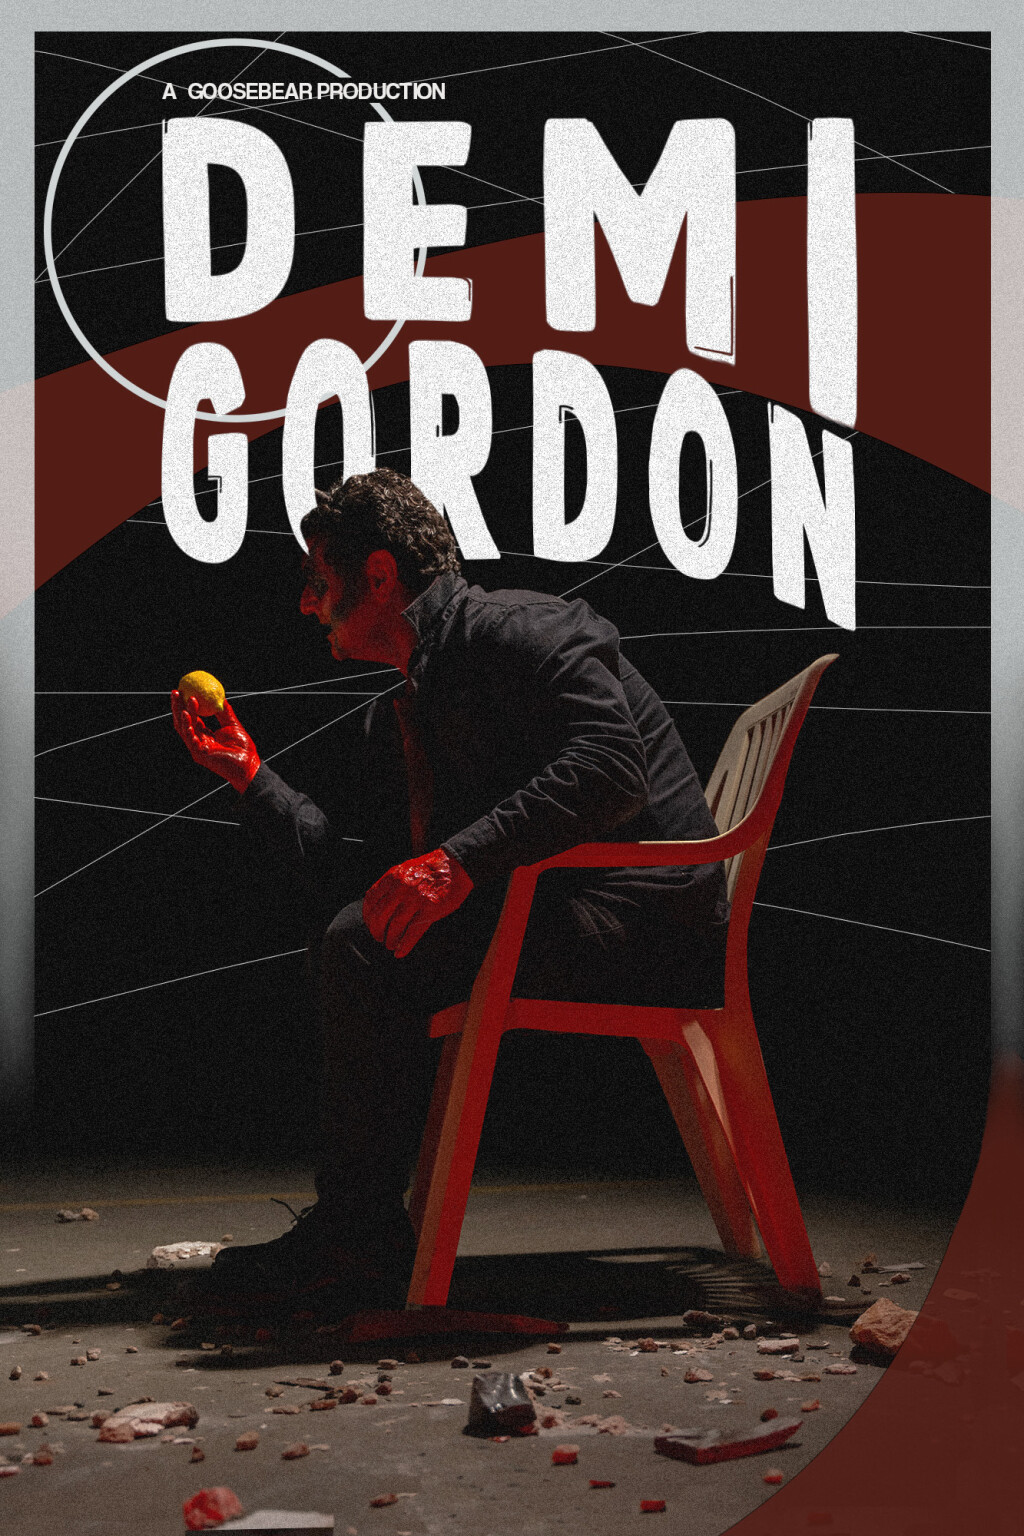 Filmposter for Demi-Gordon